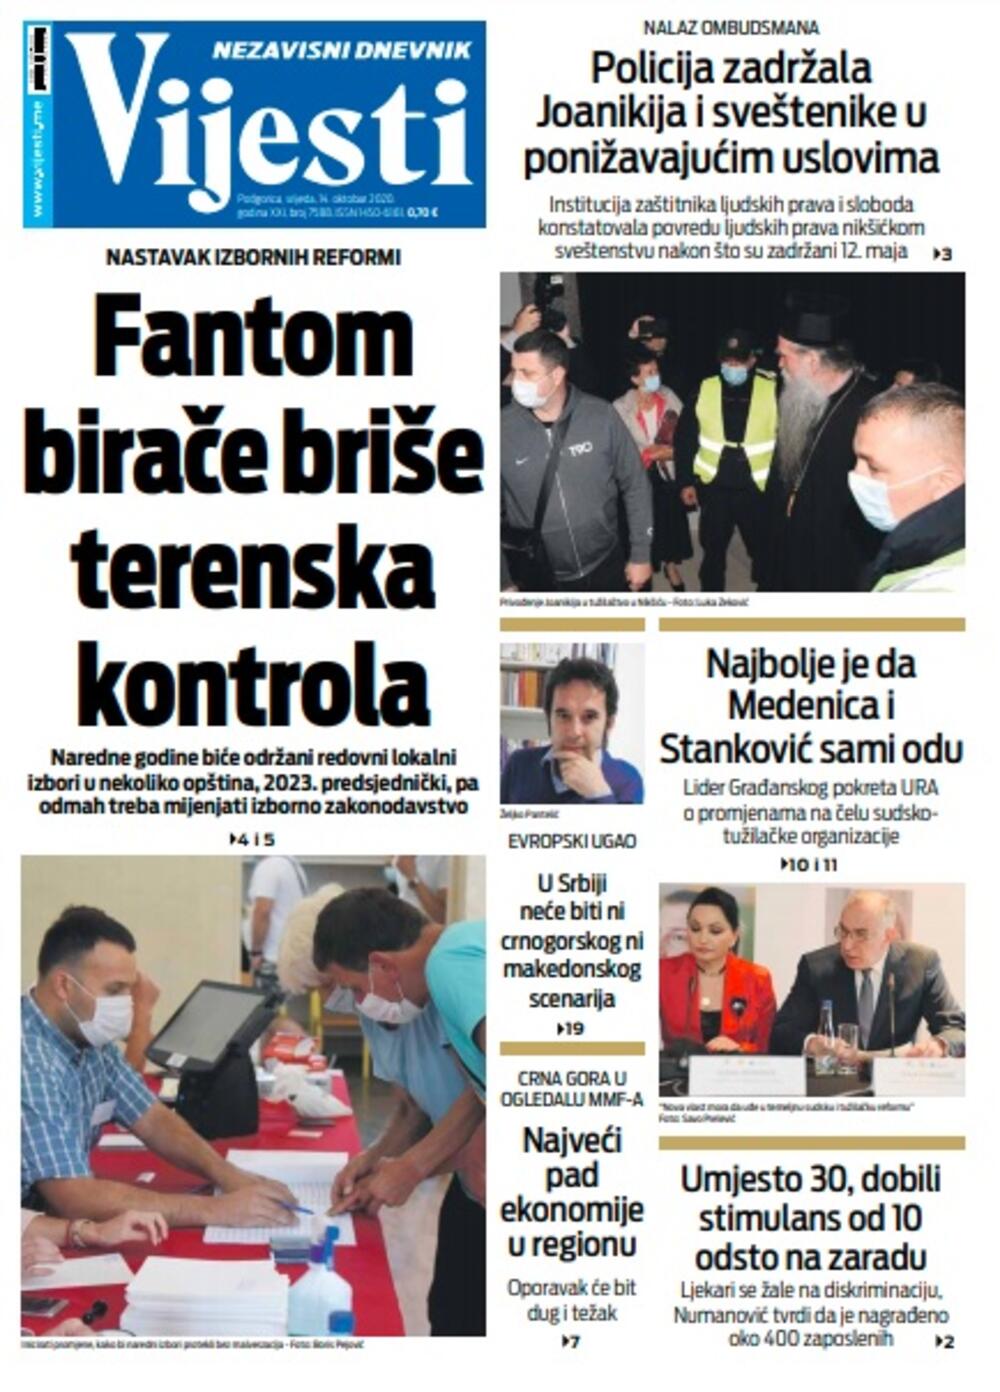 Naslovna strana "Vijesti" za srijedu 14. oktobar 2020. godine, Foto: Vijesti